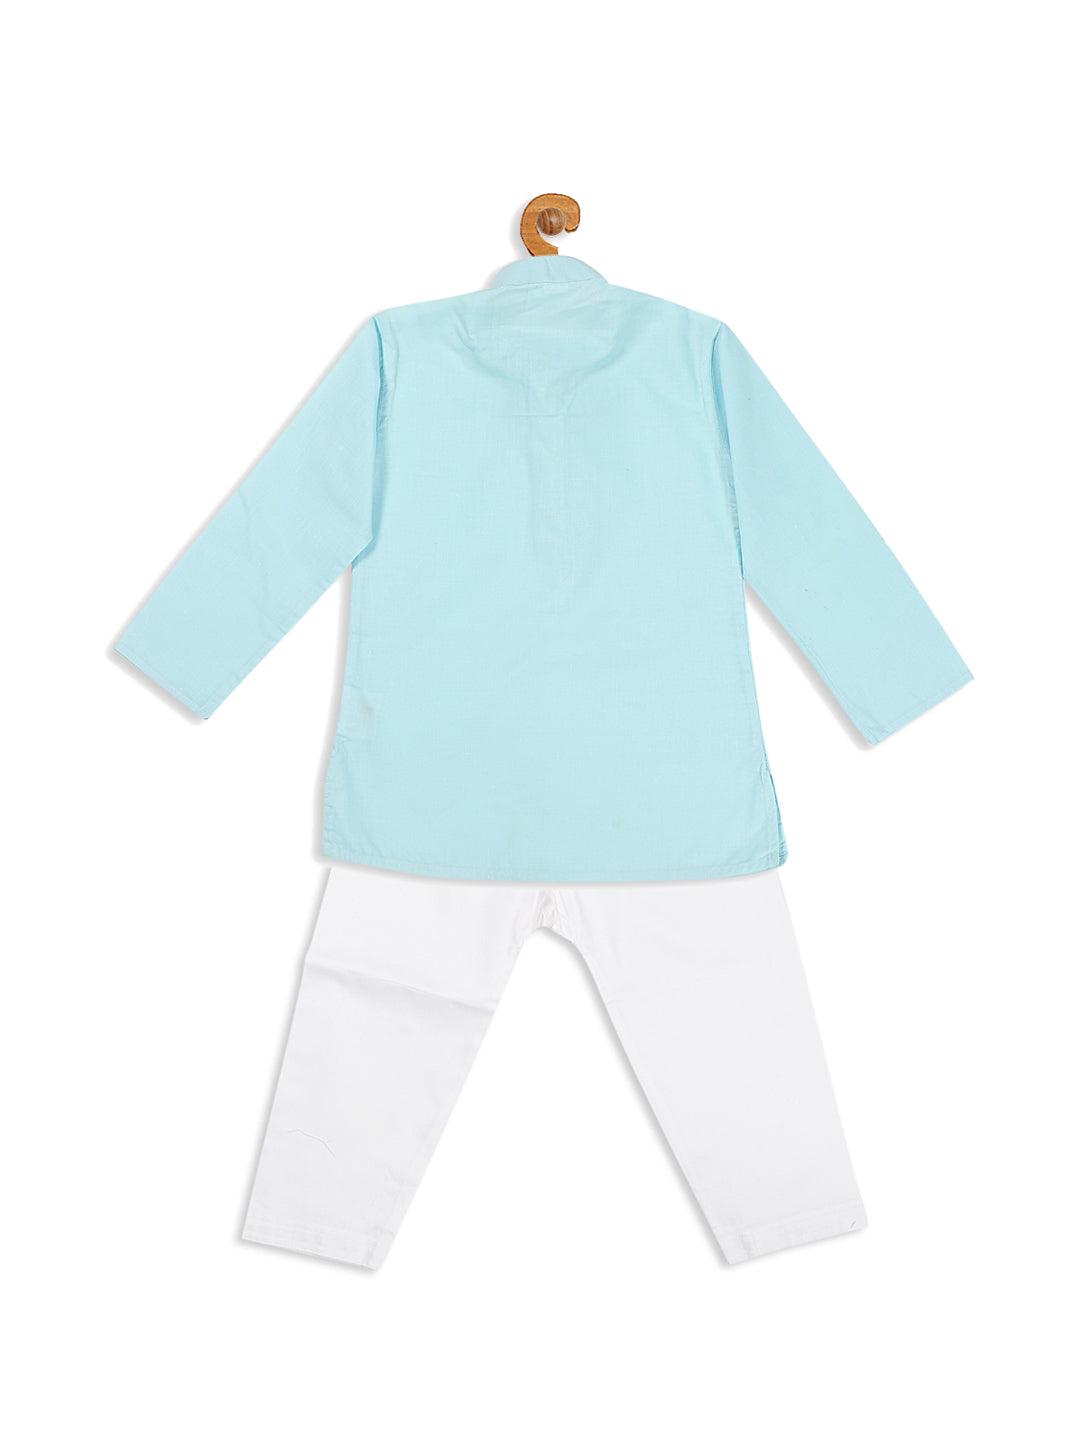 VASTRAMAY SISHU Boy's Aqua Blue Kurta With White Pyjama Set - Uboric